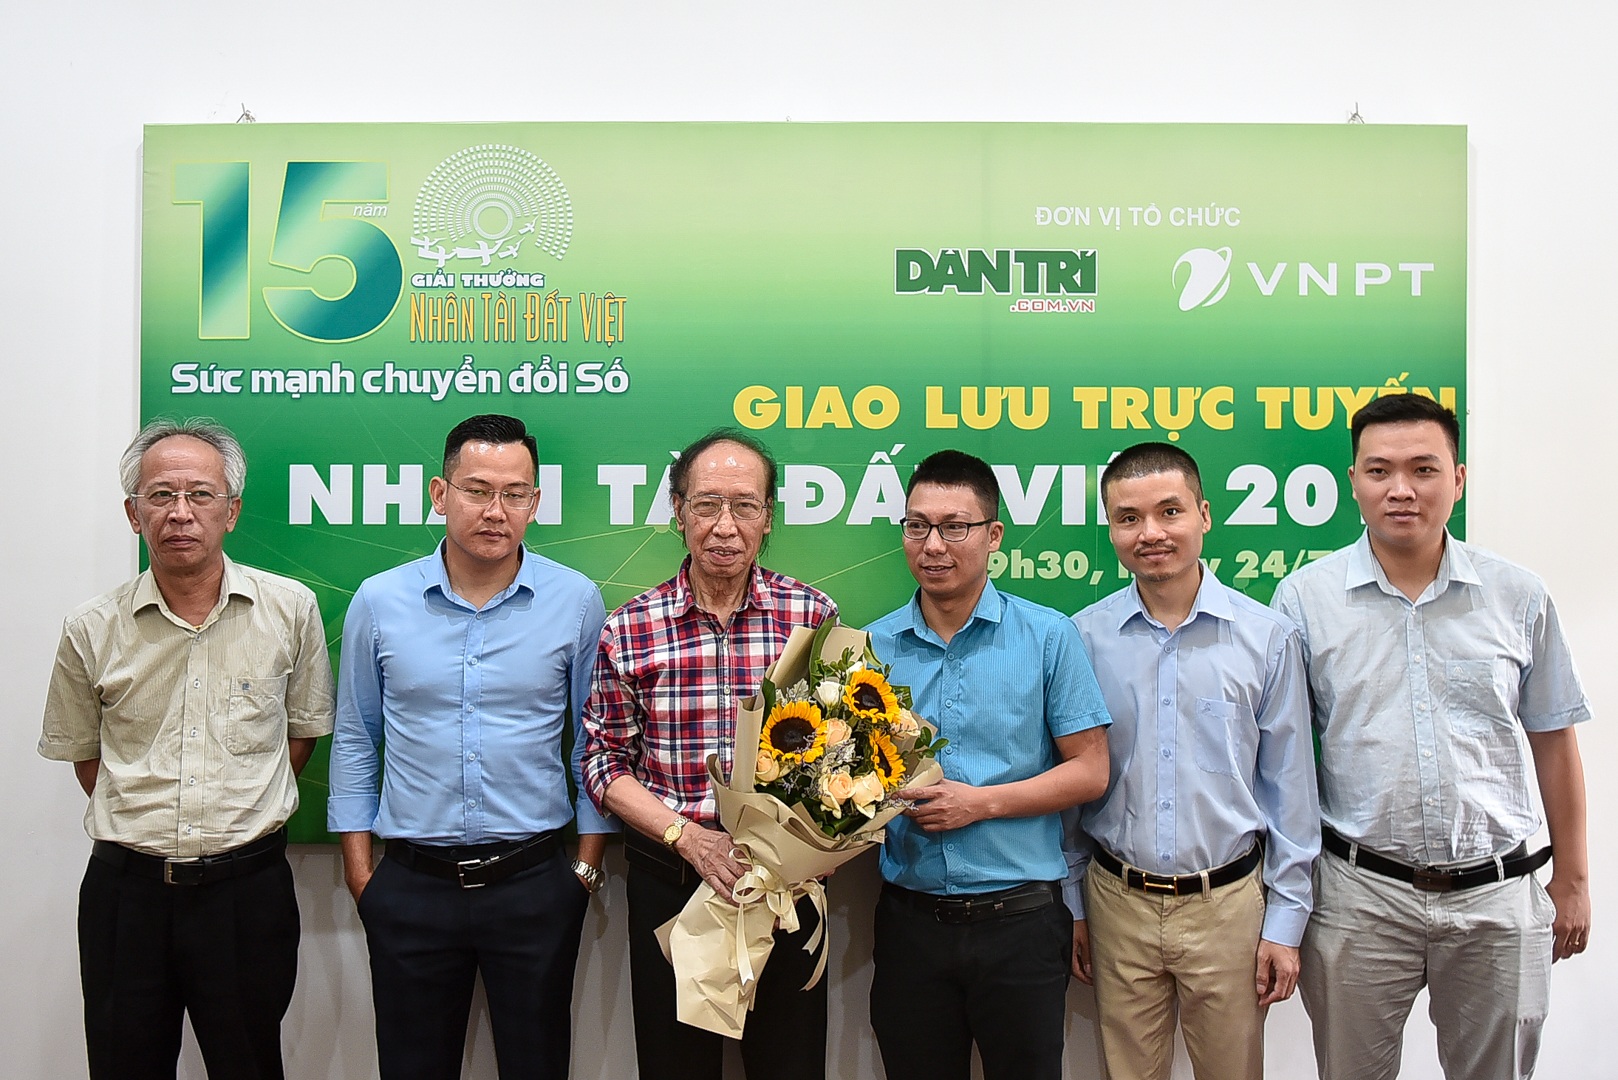 Đang giao lưu trực tuyến Nhân tài Đất Việt 2019: Cơ hội đón đầu thành công